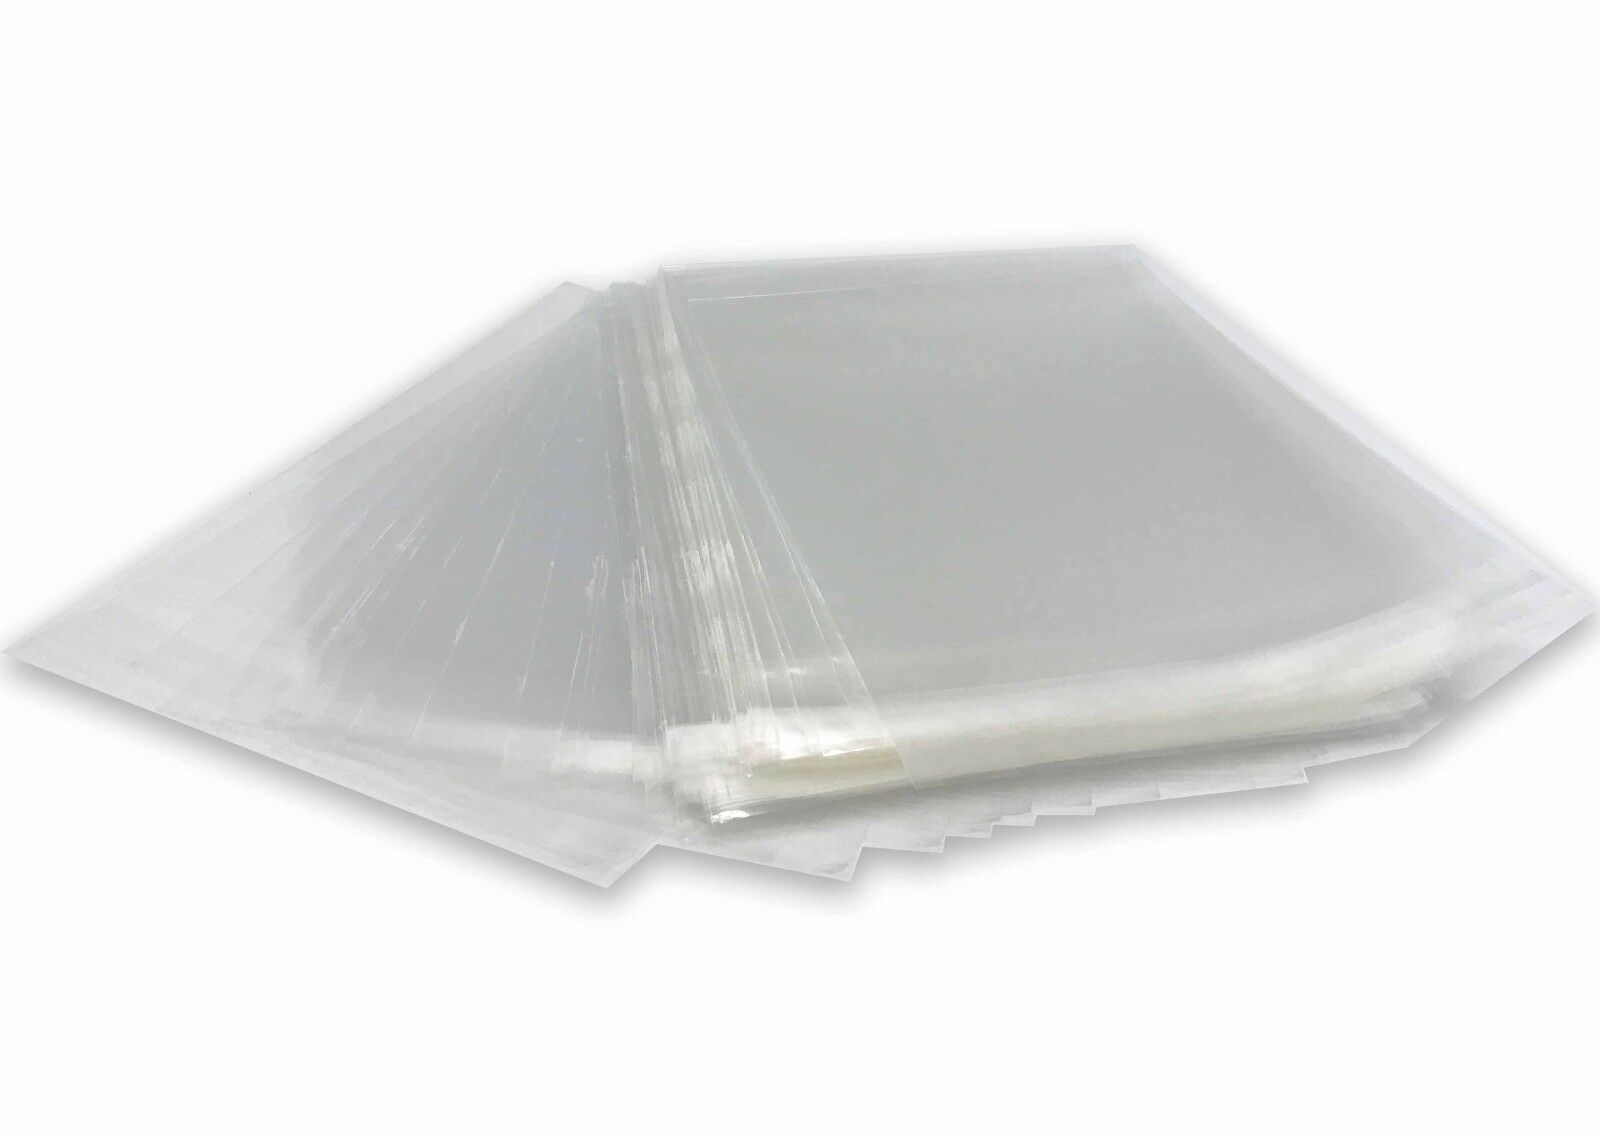 100 Clear Self-seal Opp Plastic Bags For 5x7 8x10 11x14 16x20 Mat Matting Board